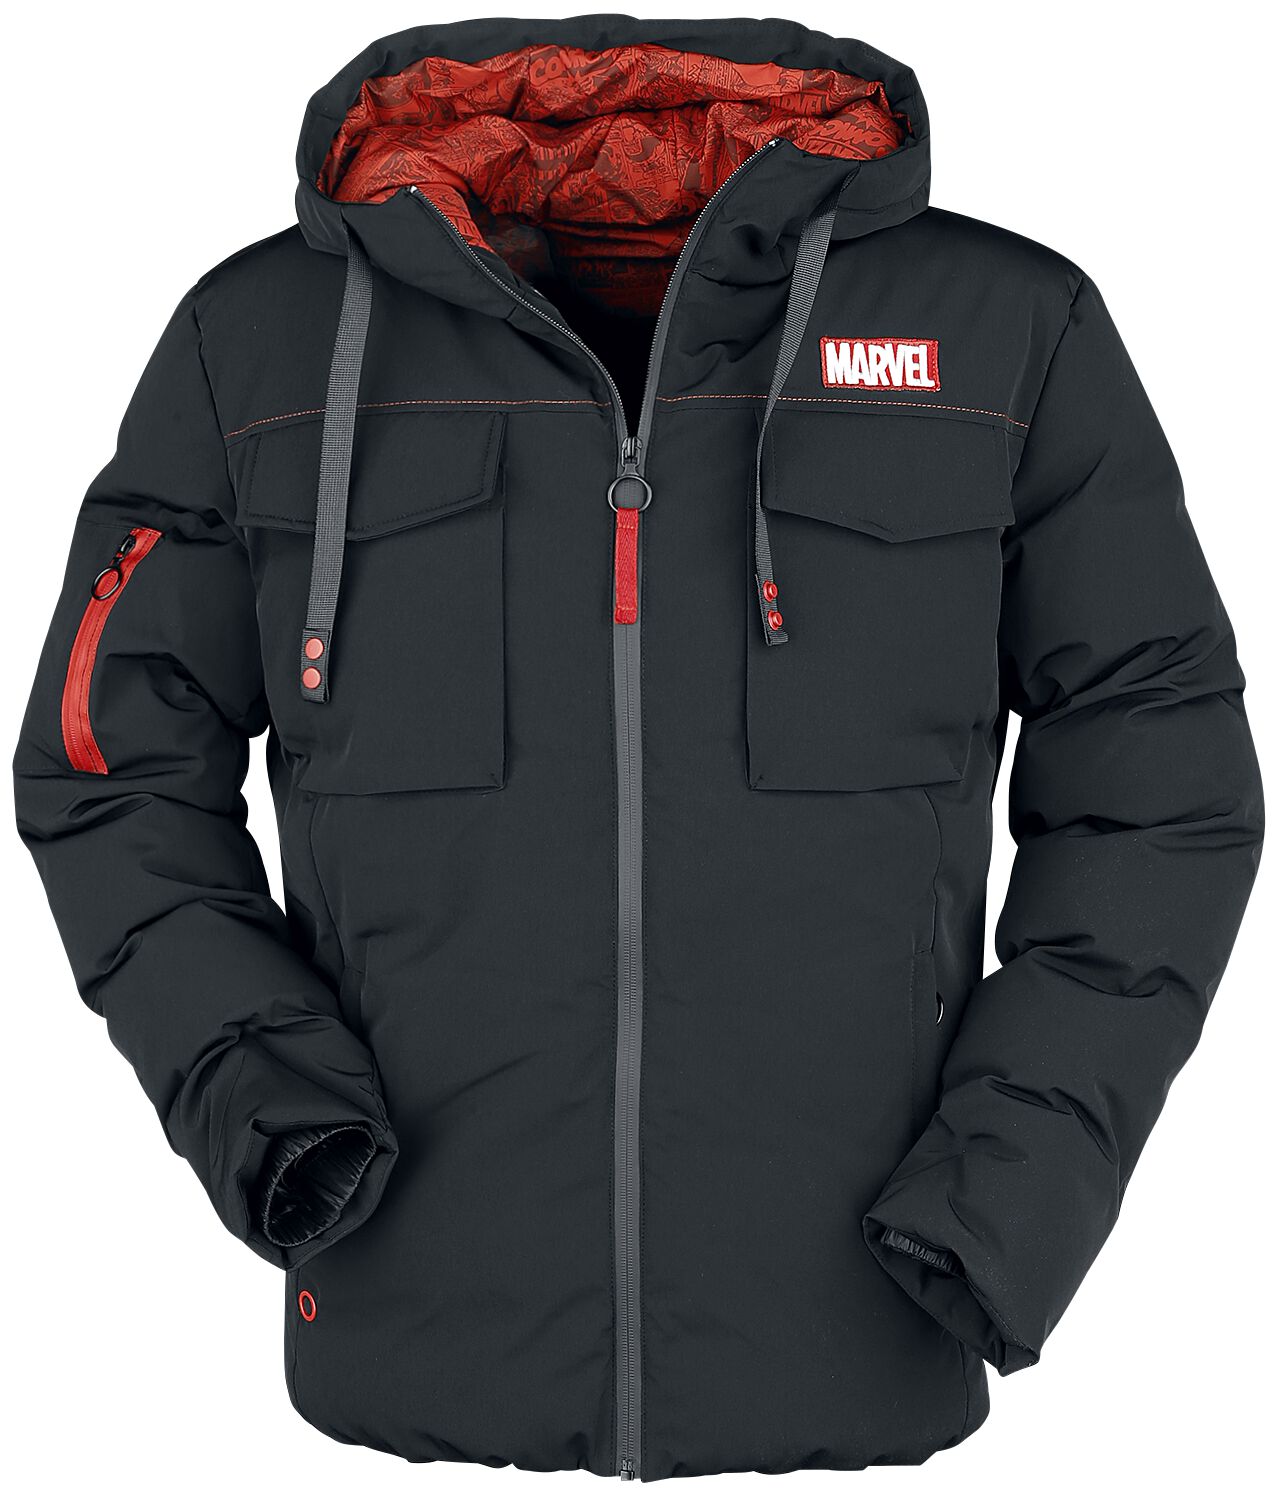 Marvel - Marvel Winterjacke - Marvel Logo - S bis XL - für Männer - Größe S - schwarz  - EMP exklusives Merchandise!